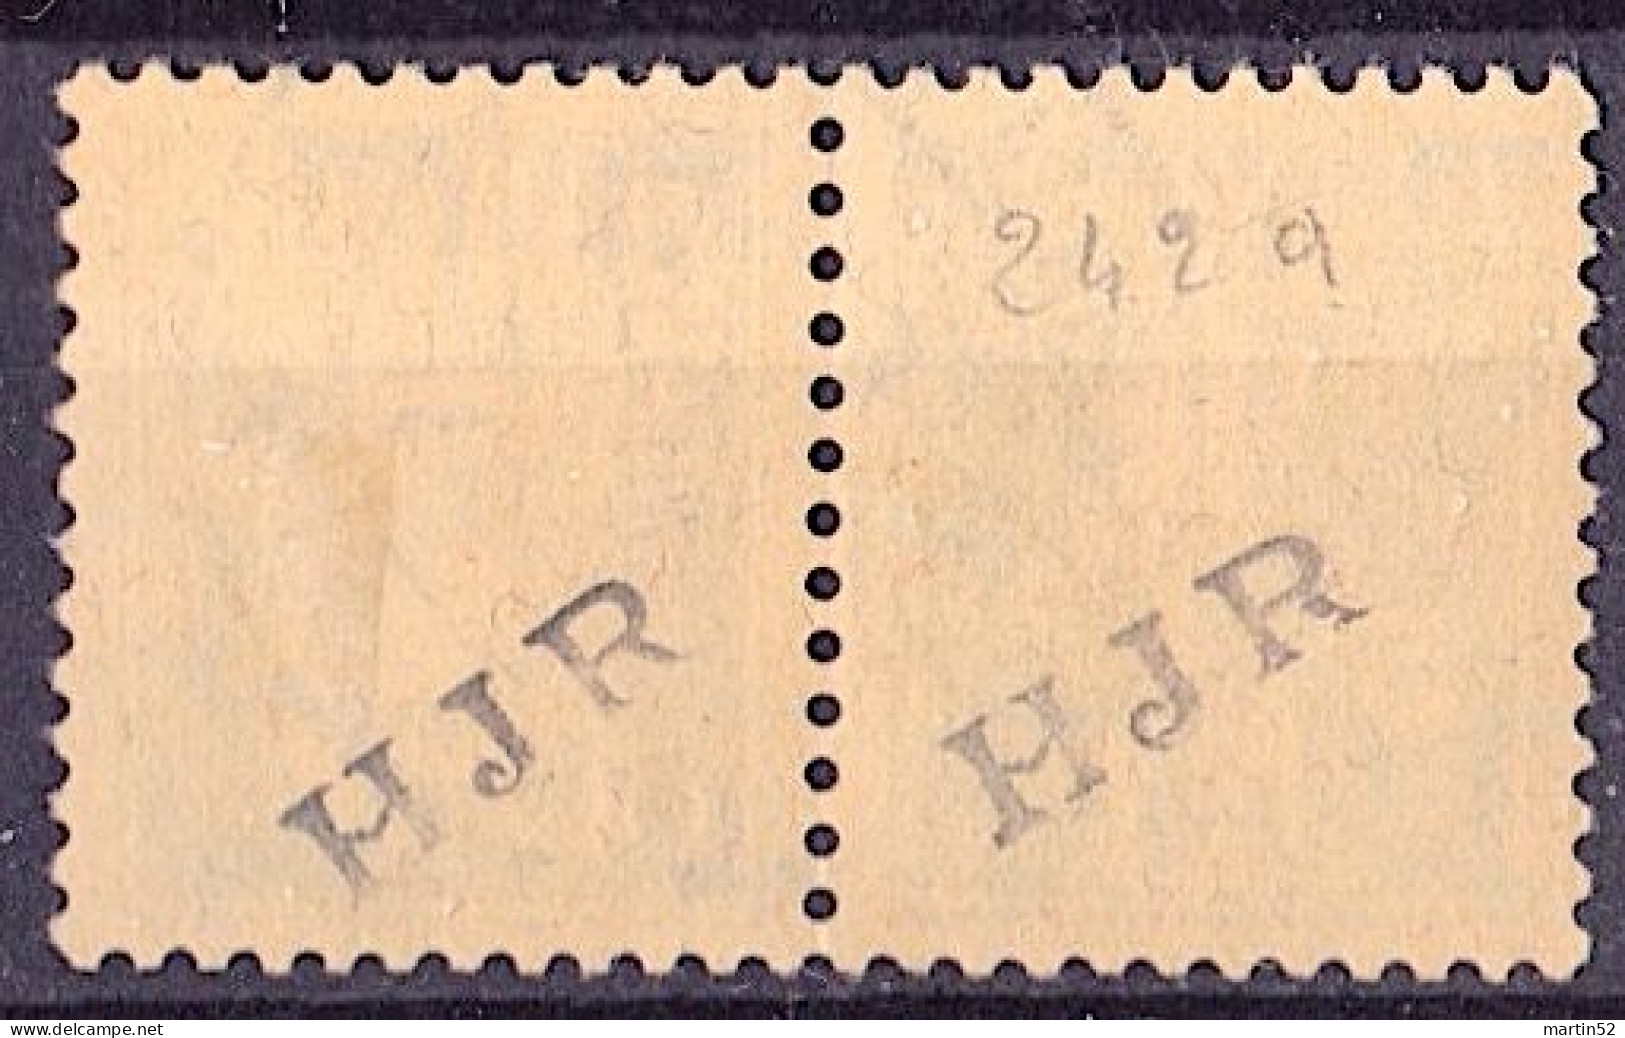 Schweiz Suisse 1933: Kehrdruck / Tête-bêche Zu K26y (glatt) Mi K26x (lisse) Mit O LEYSIN 15.XII.33 (Zu CHF 37.50) - Tête-bêche